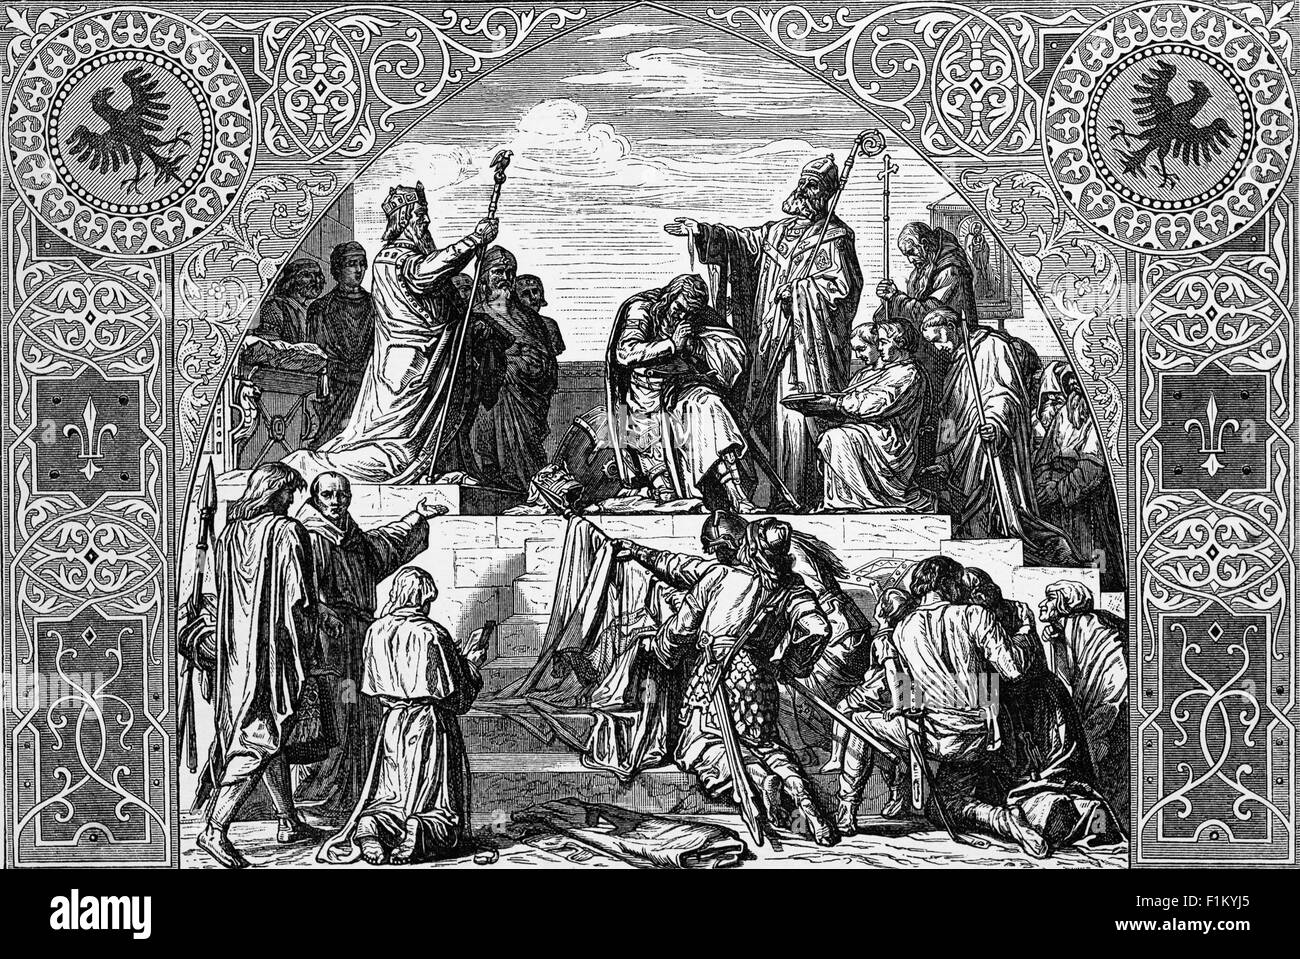 Le chef de Saxon Widukind, chef des Saxons qui se rend au roi Charlemagne en 785 après J.-C. Selon la légende, Widukind a vécu une vision qui a conduit à sa conversion au christianisme après qu'il ait été capturé. Il a été interrogé et avoué espionner le camp de Charlemagne dans le but de mieux connaître la foi chrétienne. Il a plus tard avoué la vision divine qu'il avait vue. L'empereur a conclu que Dieu avait donné à Widukind la grâce de voir l'enfant divin, Jésus, derrière l'Armée sacrée de la messe. Widukind a ensuite renoncé à son culte des idoles païennes. Banque D'Images